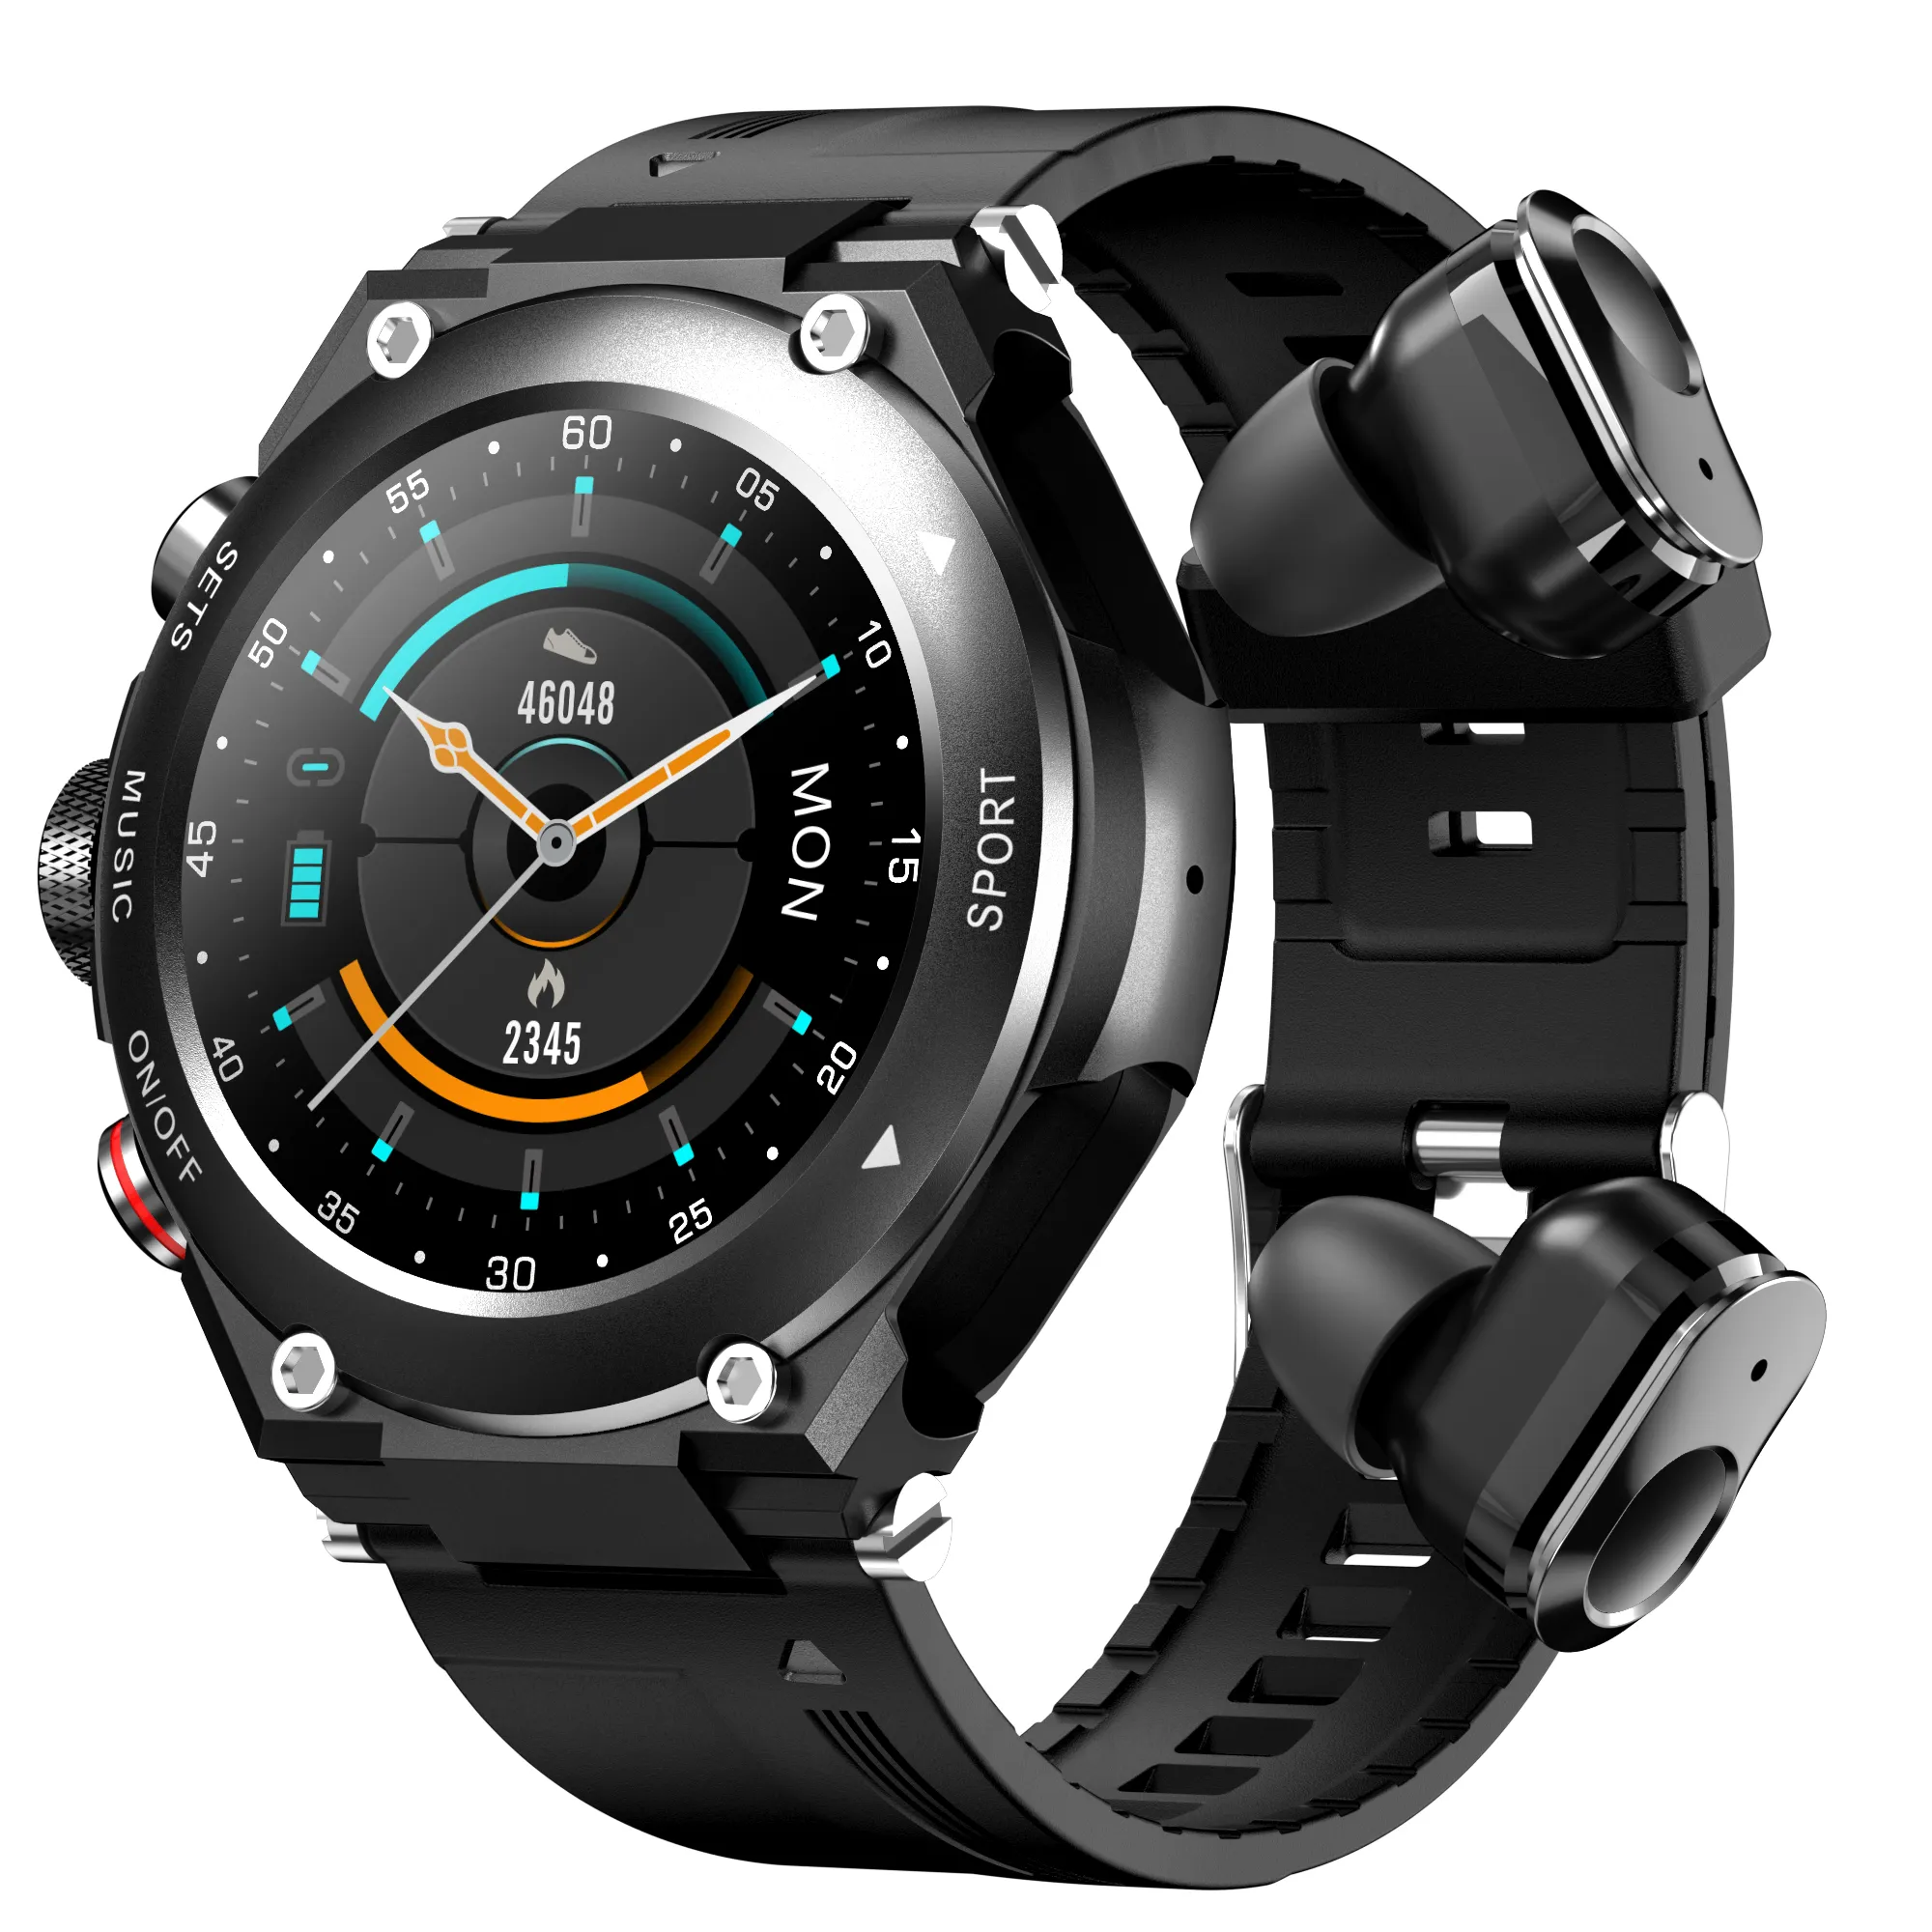 Kulakiçi ile akıllı saat Ce Rohs akıllı saat manuel T92 Smartwatch TWS kulaklık en iyi Smartwatch giyilebilir cihaz